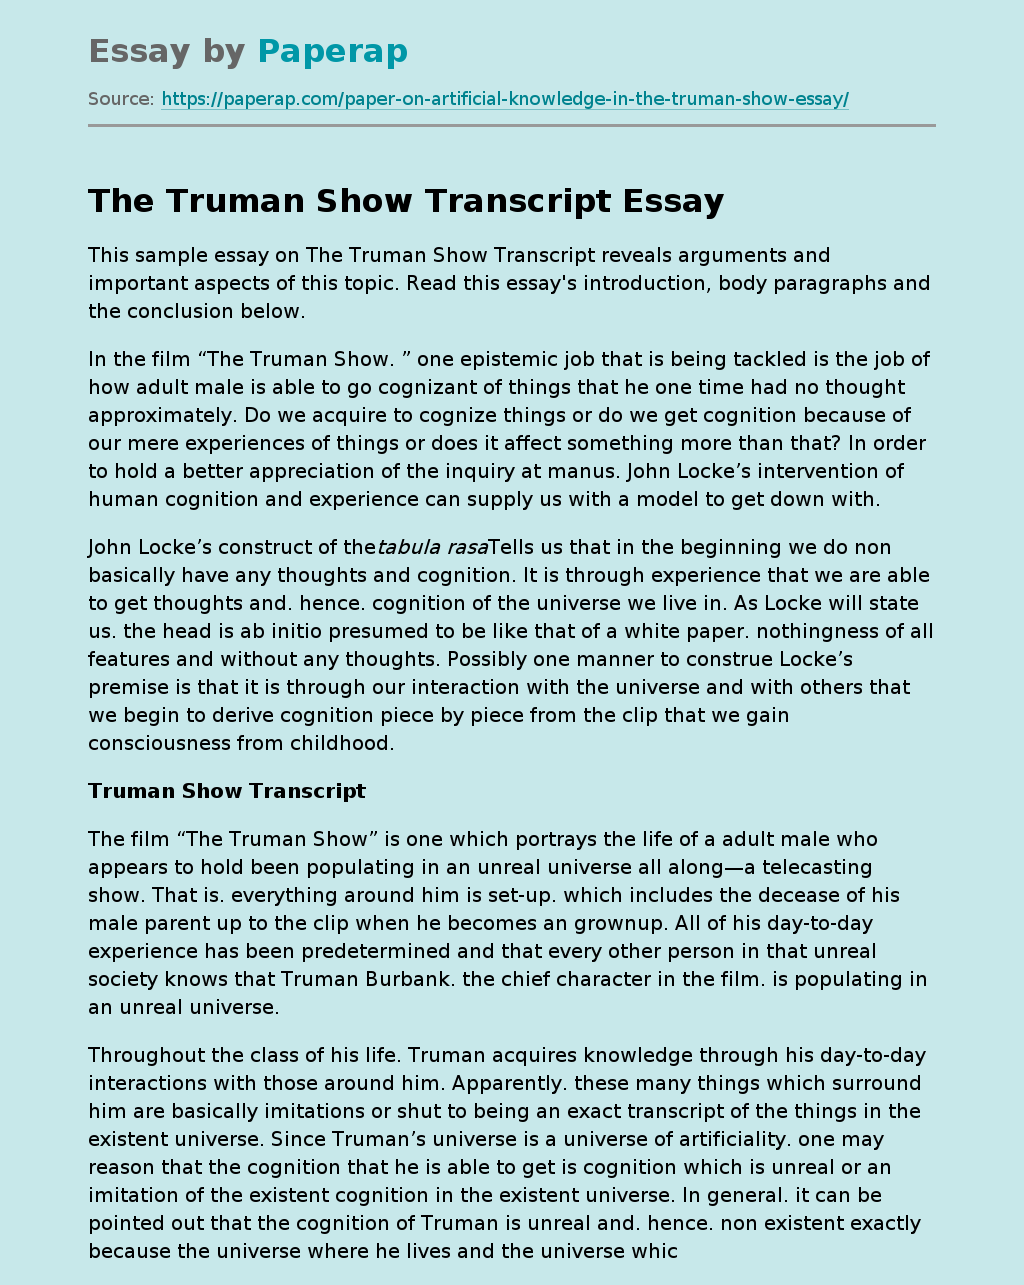 The Truman Show Transcript